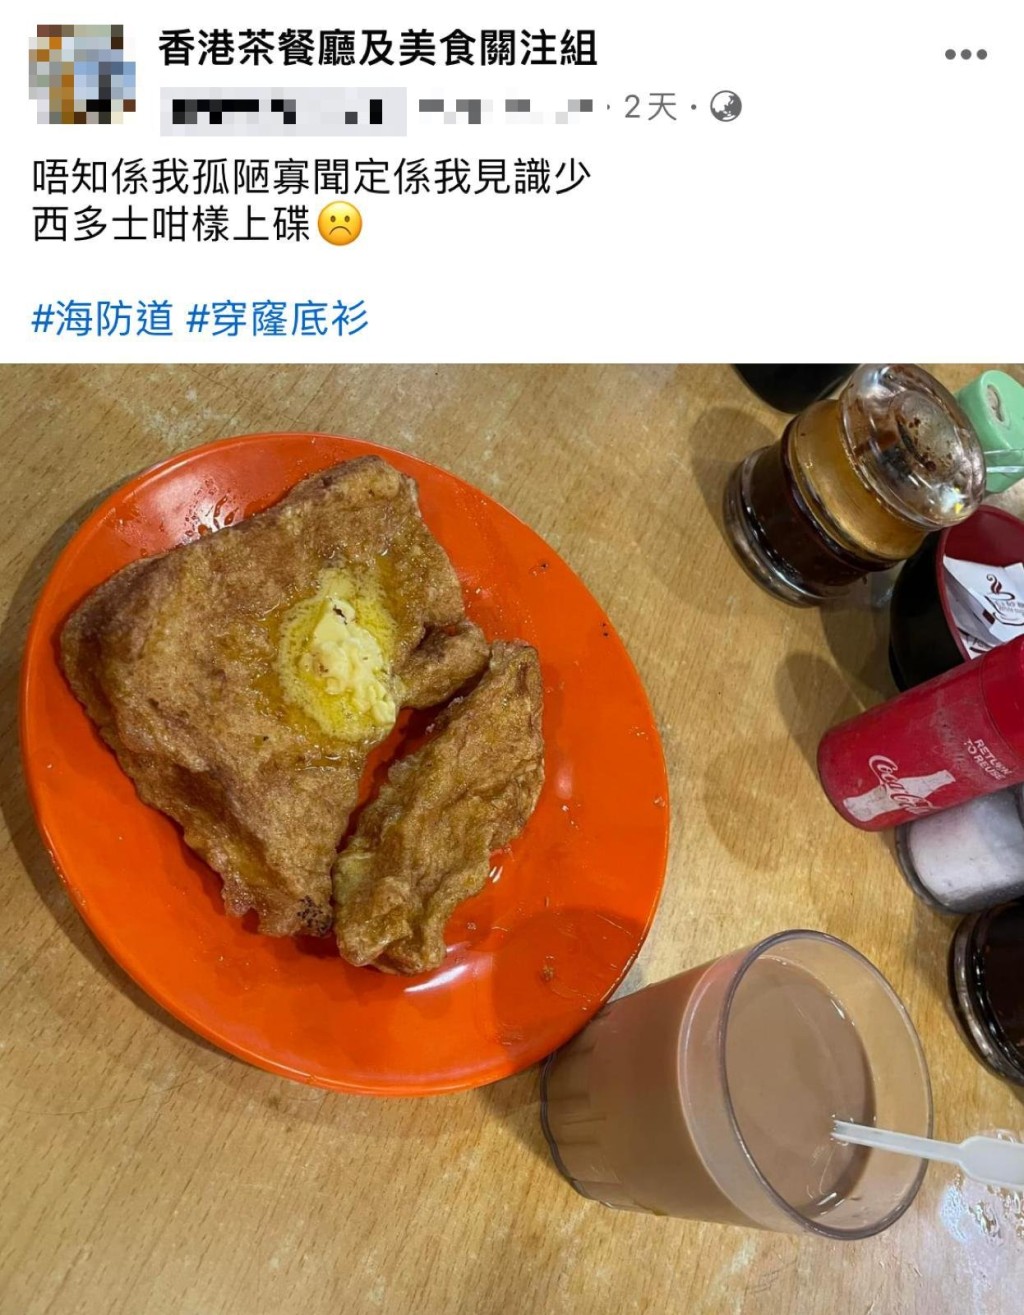 有网民在尖沙咀海防道街市熟食中心茶档食西多士，却发现其卖相「独特」，遂在facebook群组「香港茶餐厅及美食关注组」发帖求问。